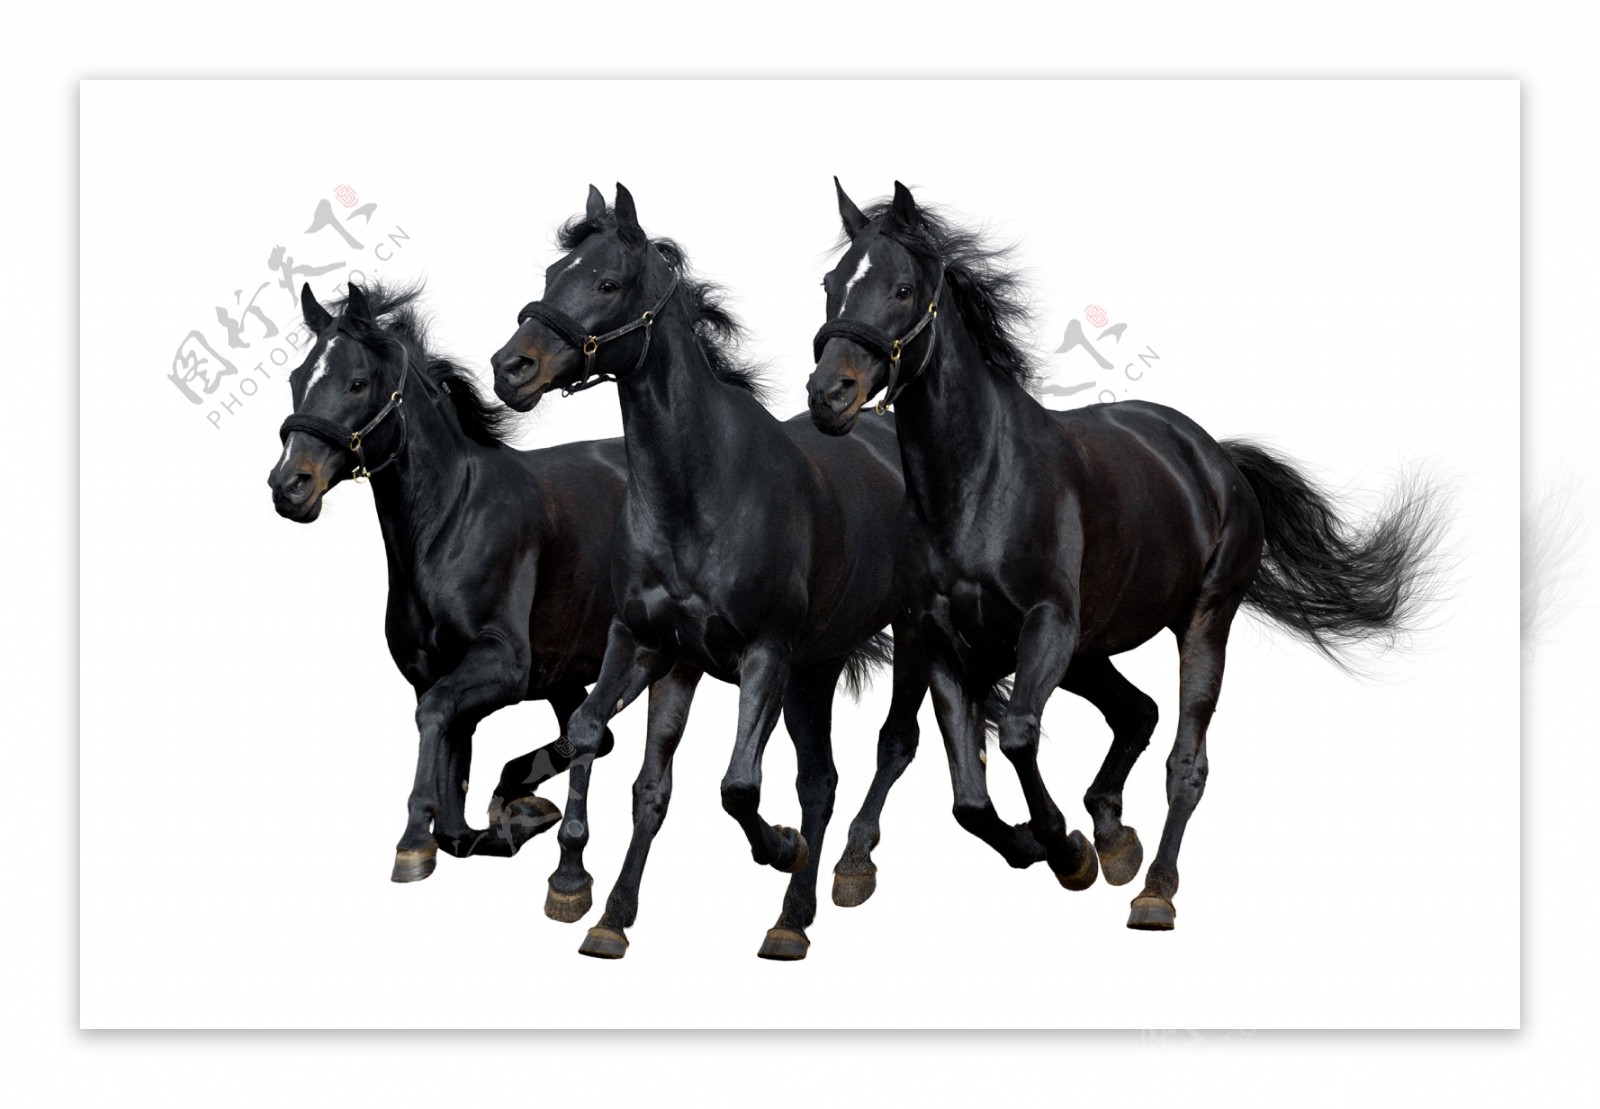 三匹黑马图片